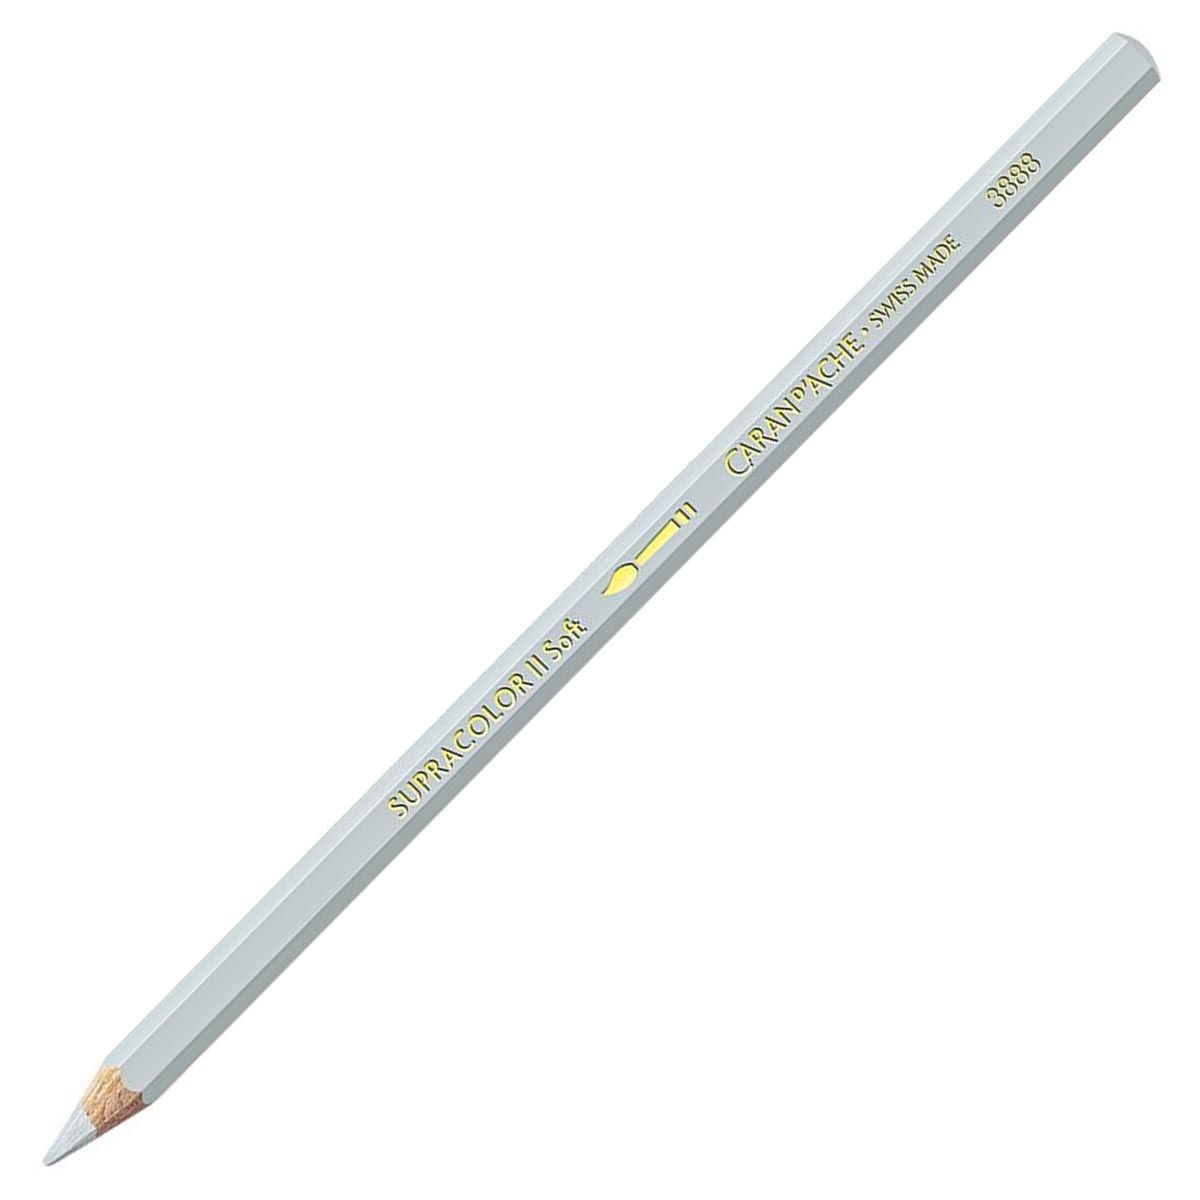 Caran d'Ache Supracolor ll Soft Aquarelle Pencil - Light Grey 003